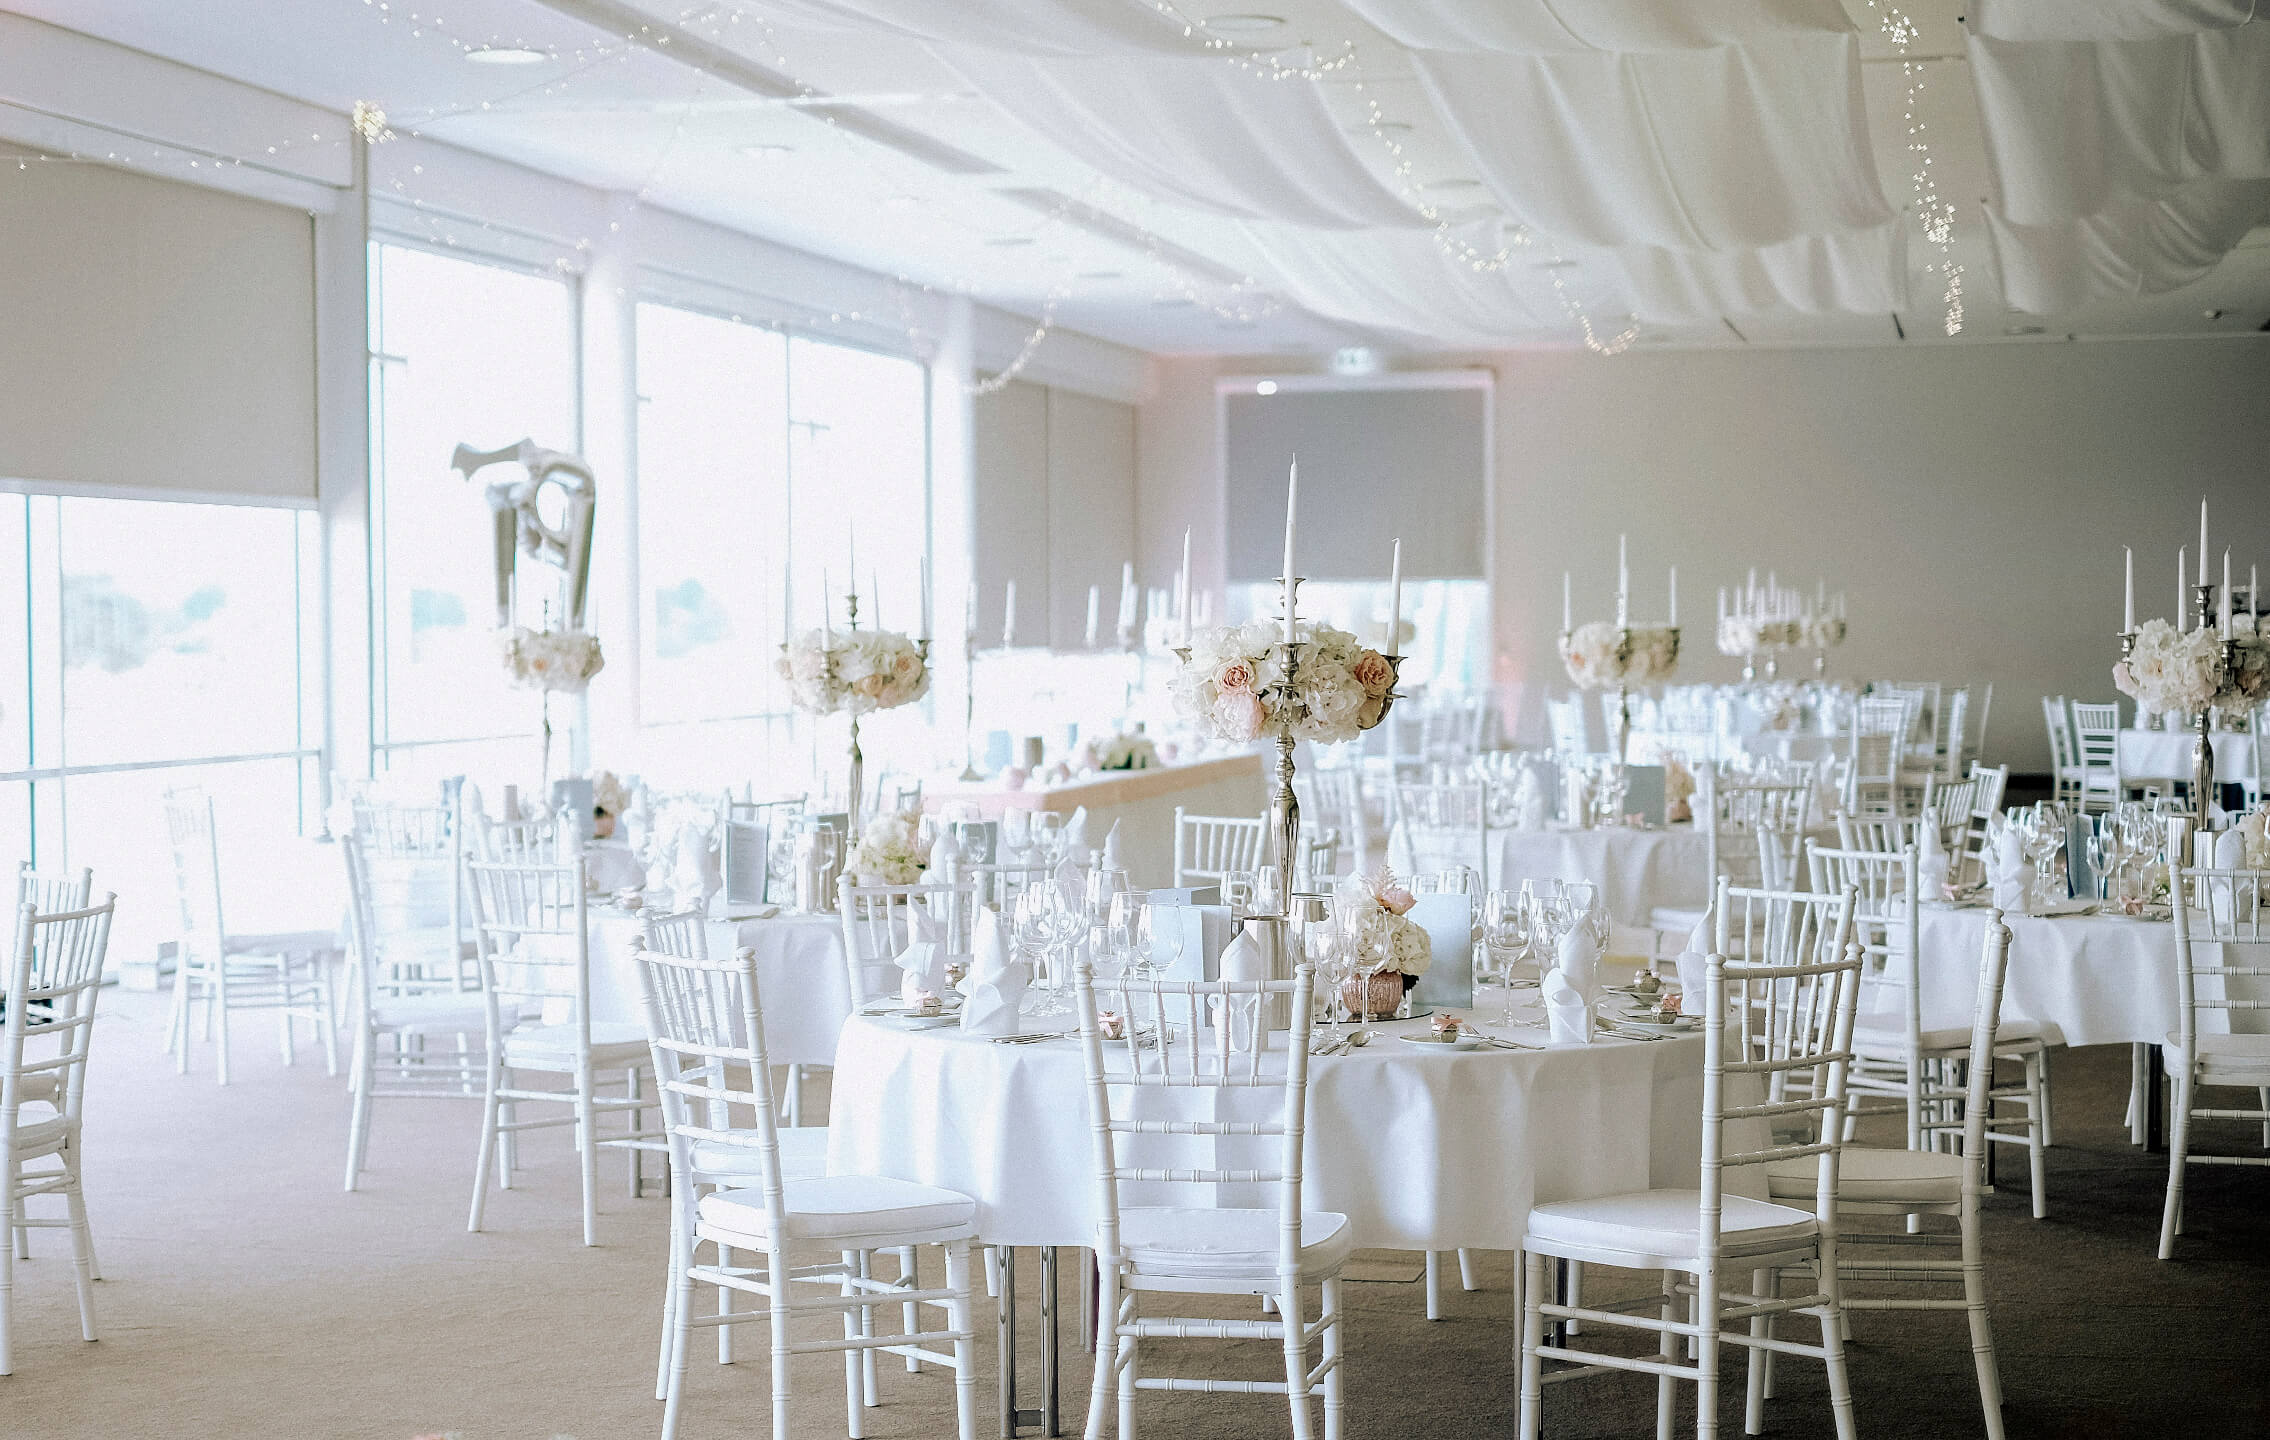 Veranstaltungsraum mit festliche eingedeckten Tischen für eine Hochzeitsfeier